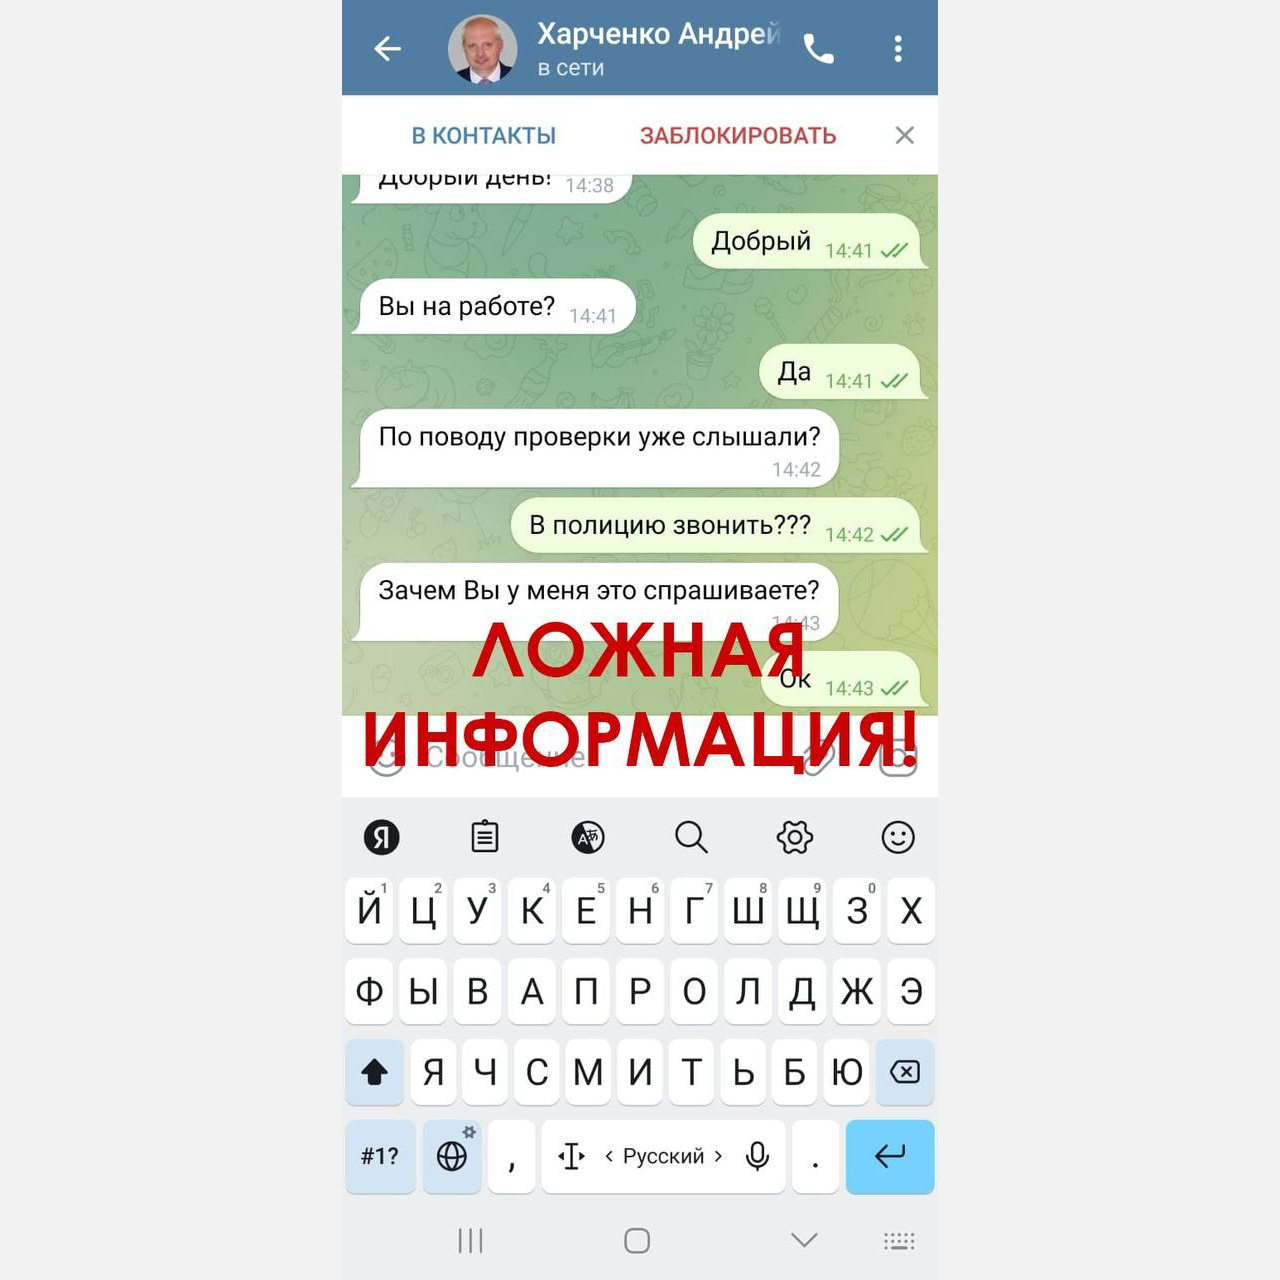 Мошенники создали фейковый аккаунт Андрея Харченко